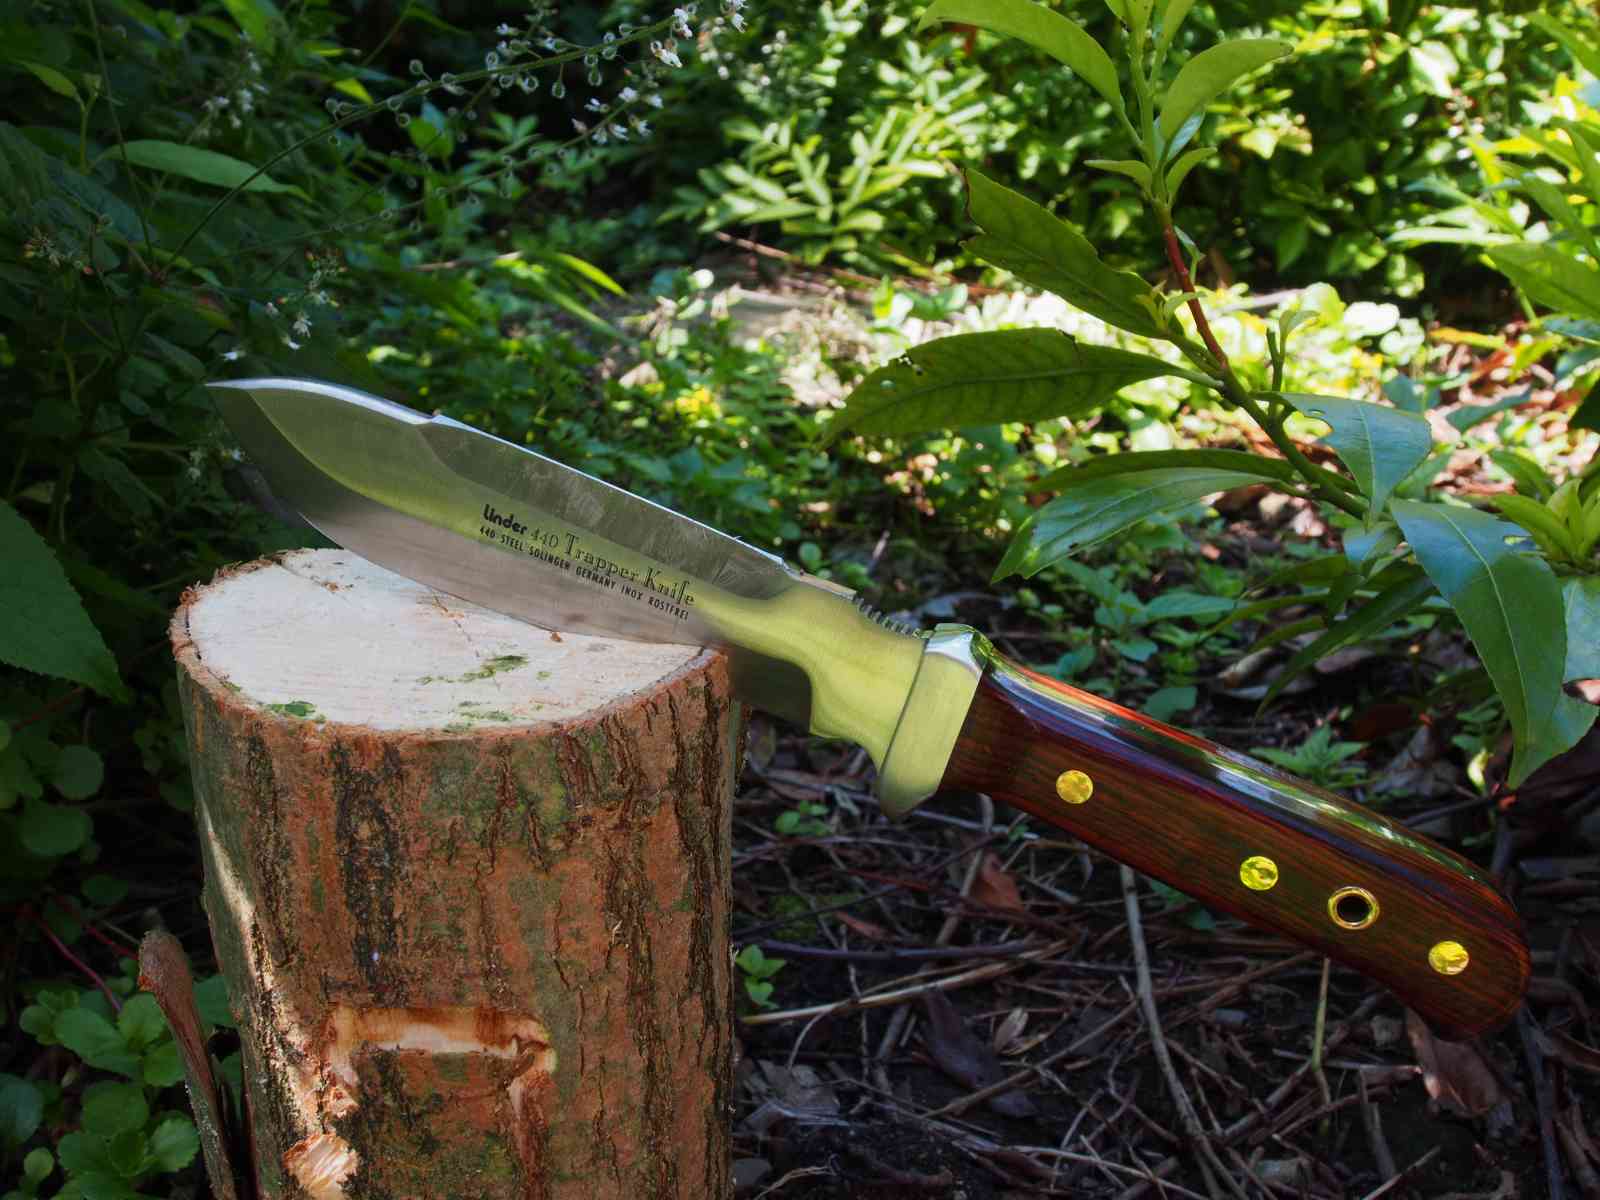 Linder Trapper Messer für harte Holzarbeit